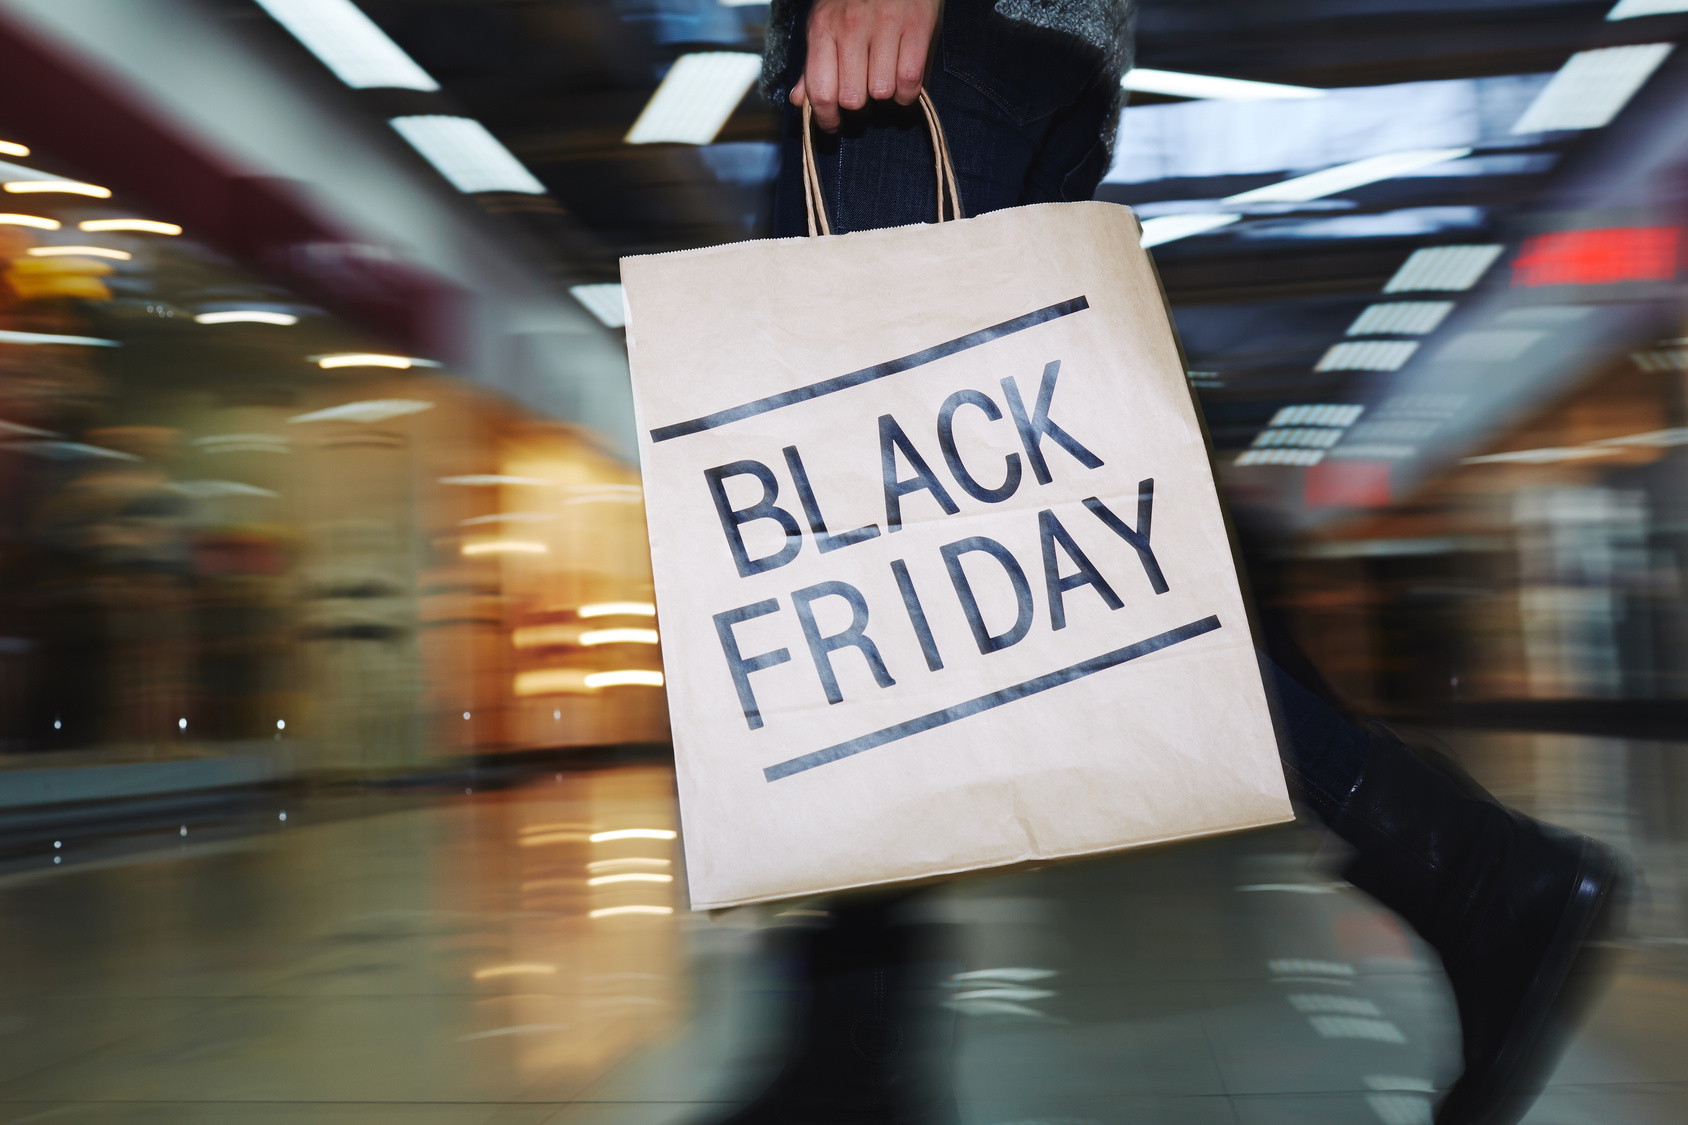 Viagens: Confira os horários de funcionamento dos shoppings e lojas para a Black Friday 2015 em SP